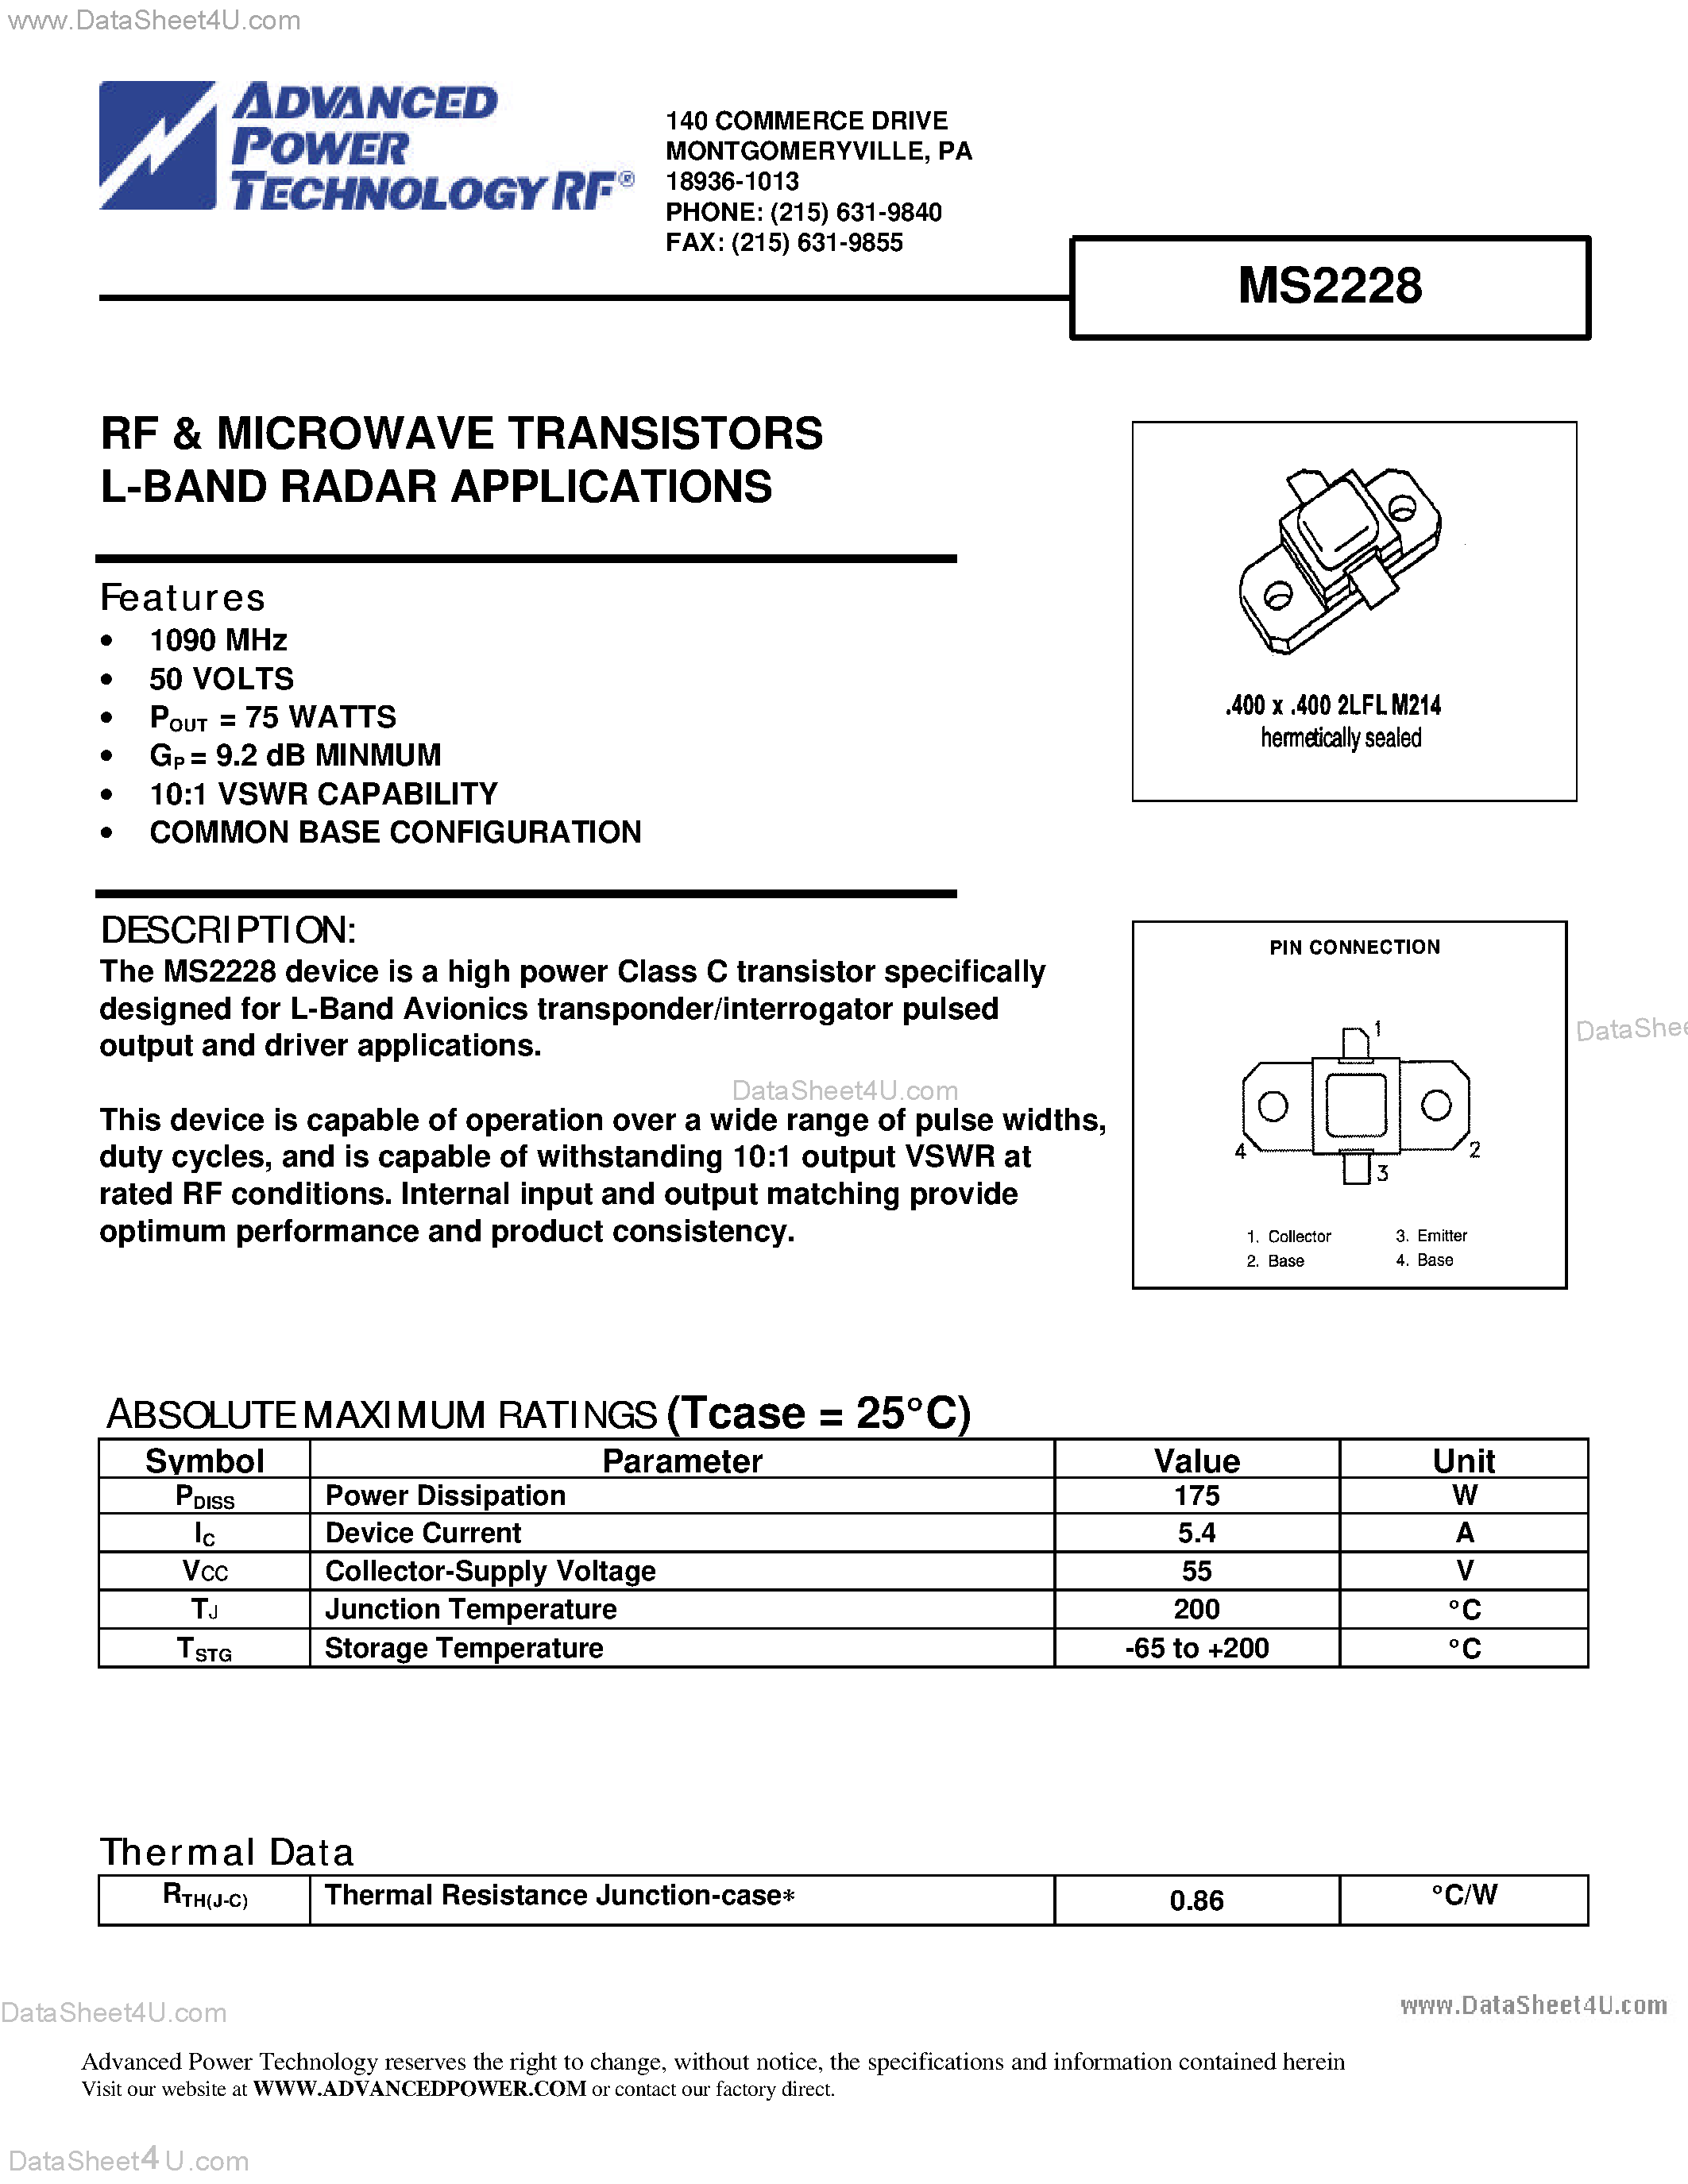 Даташит MS2228 - RF & MICROWAVE TRANSISTORS L-BAND RADAR APPLICATIONS страница 1